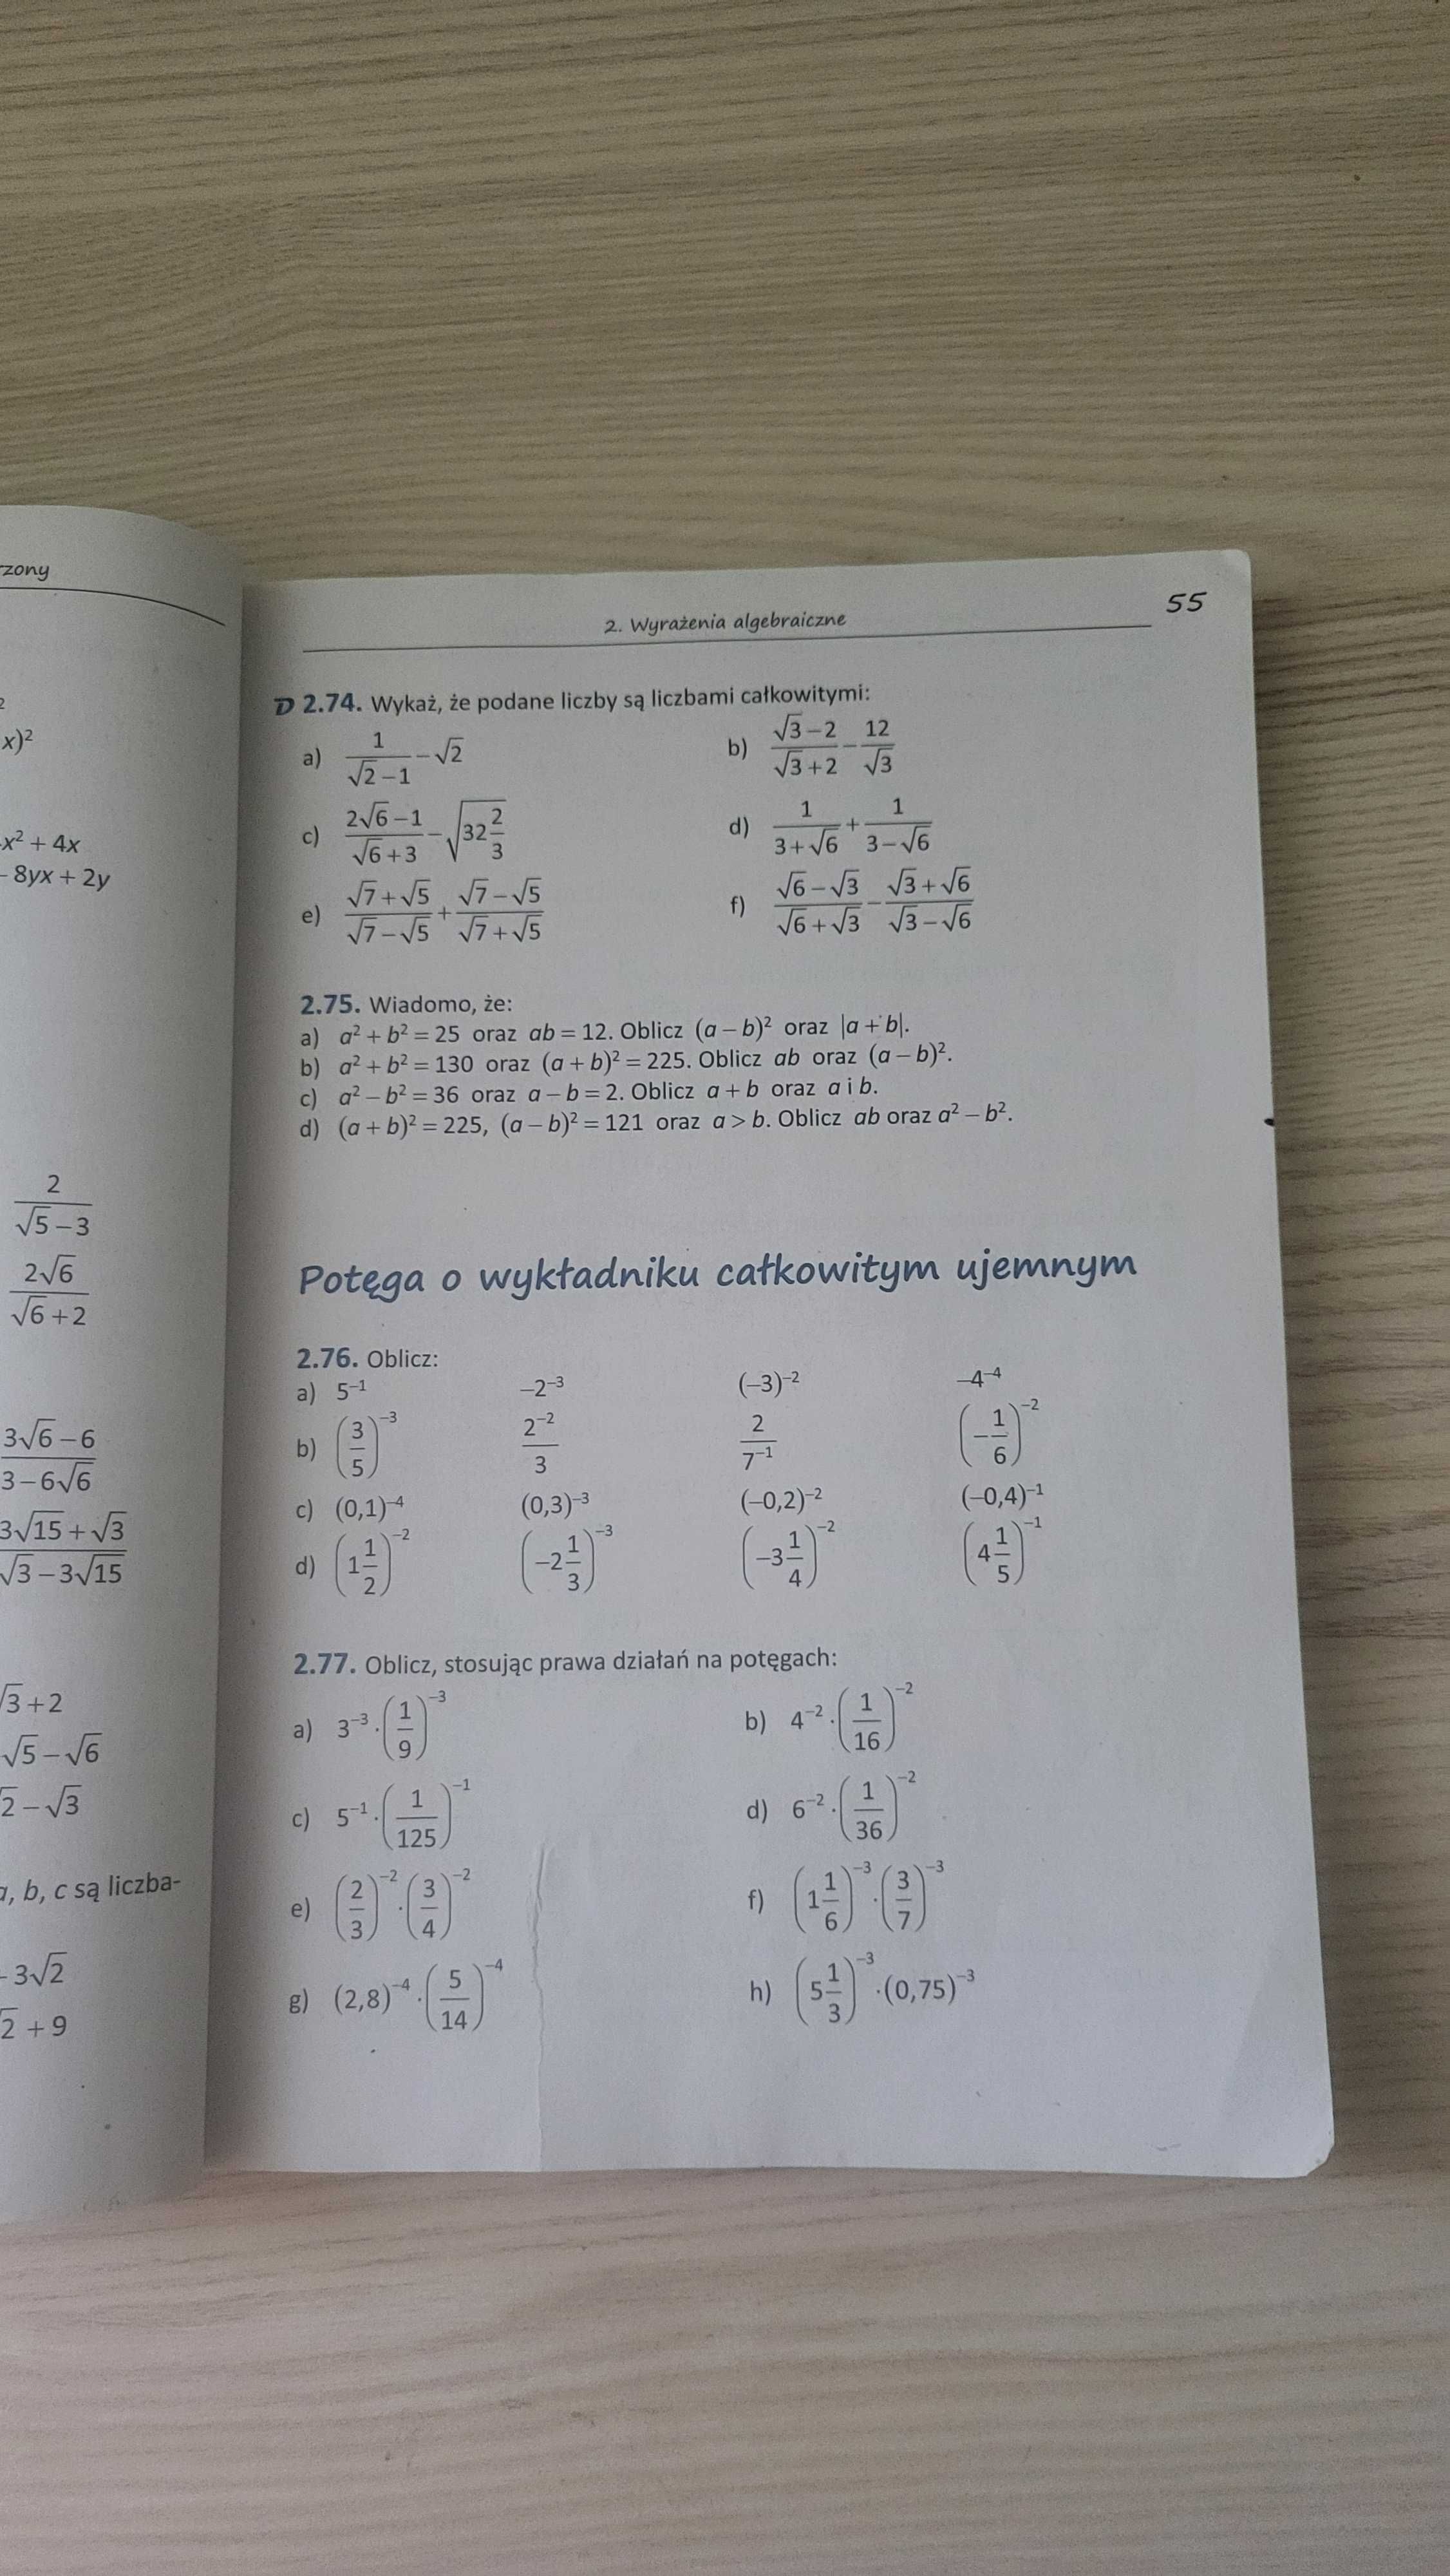 Matematyka 1 - zbiór zadań do liceów i techników/podręcznik PAZDRO